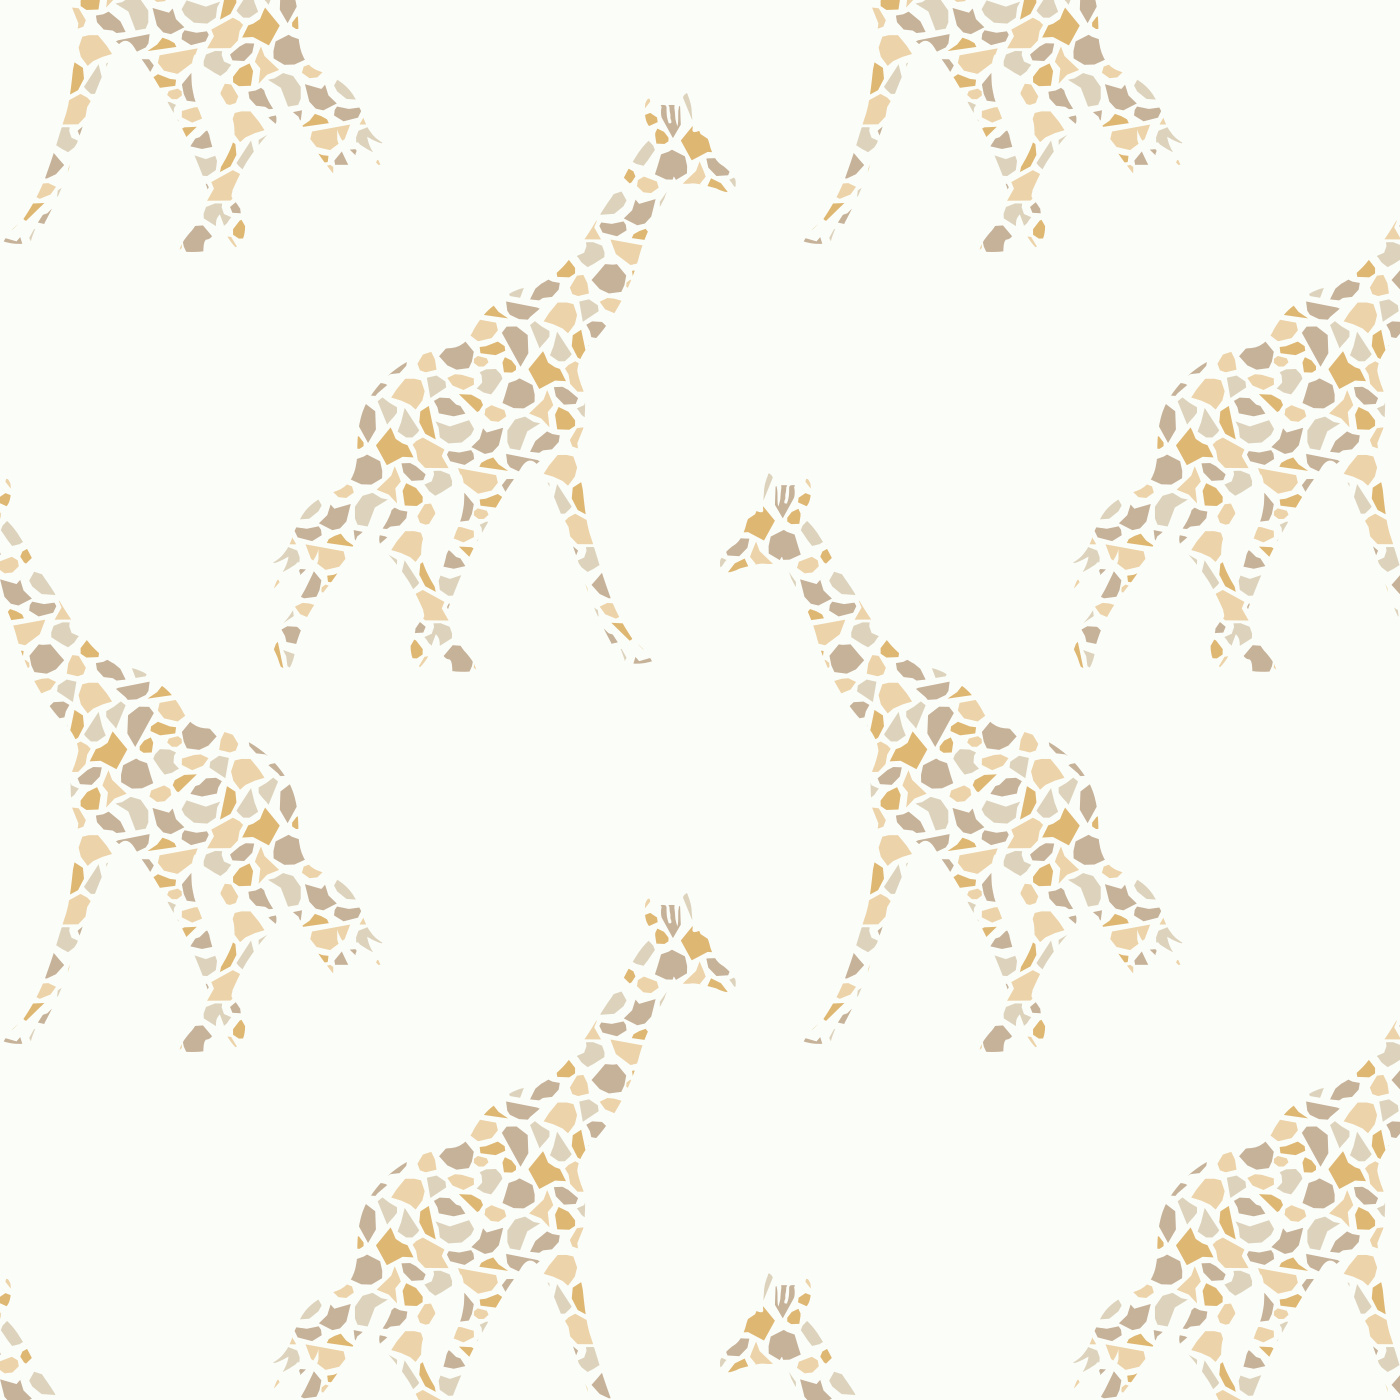 Mod Giraffes Wallpaper